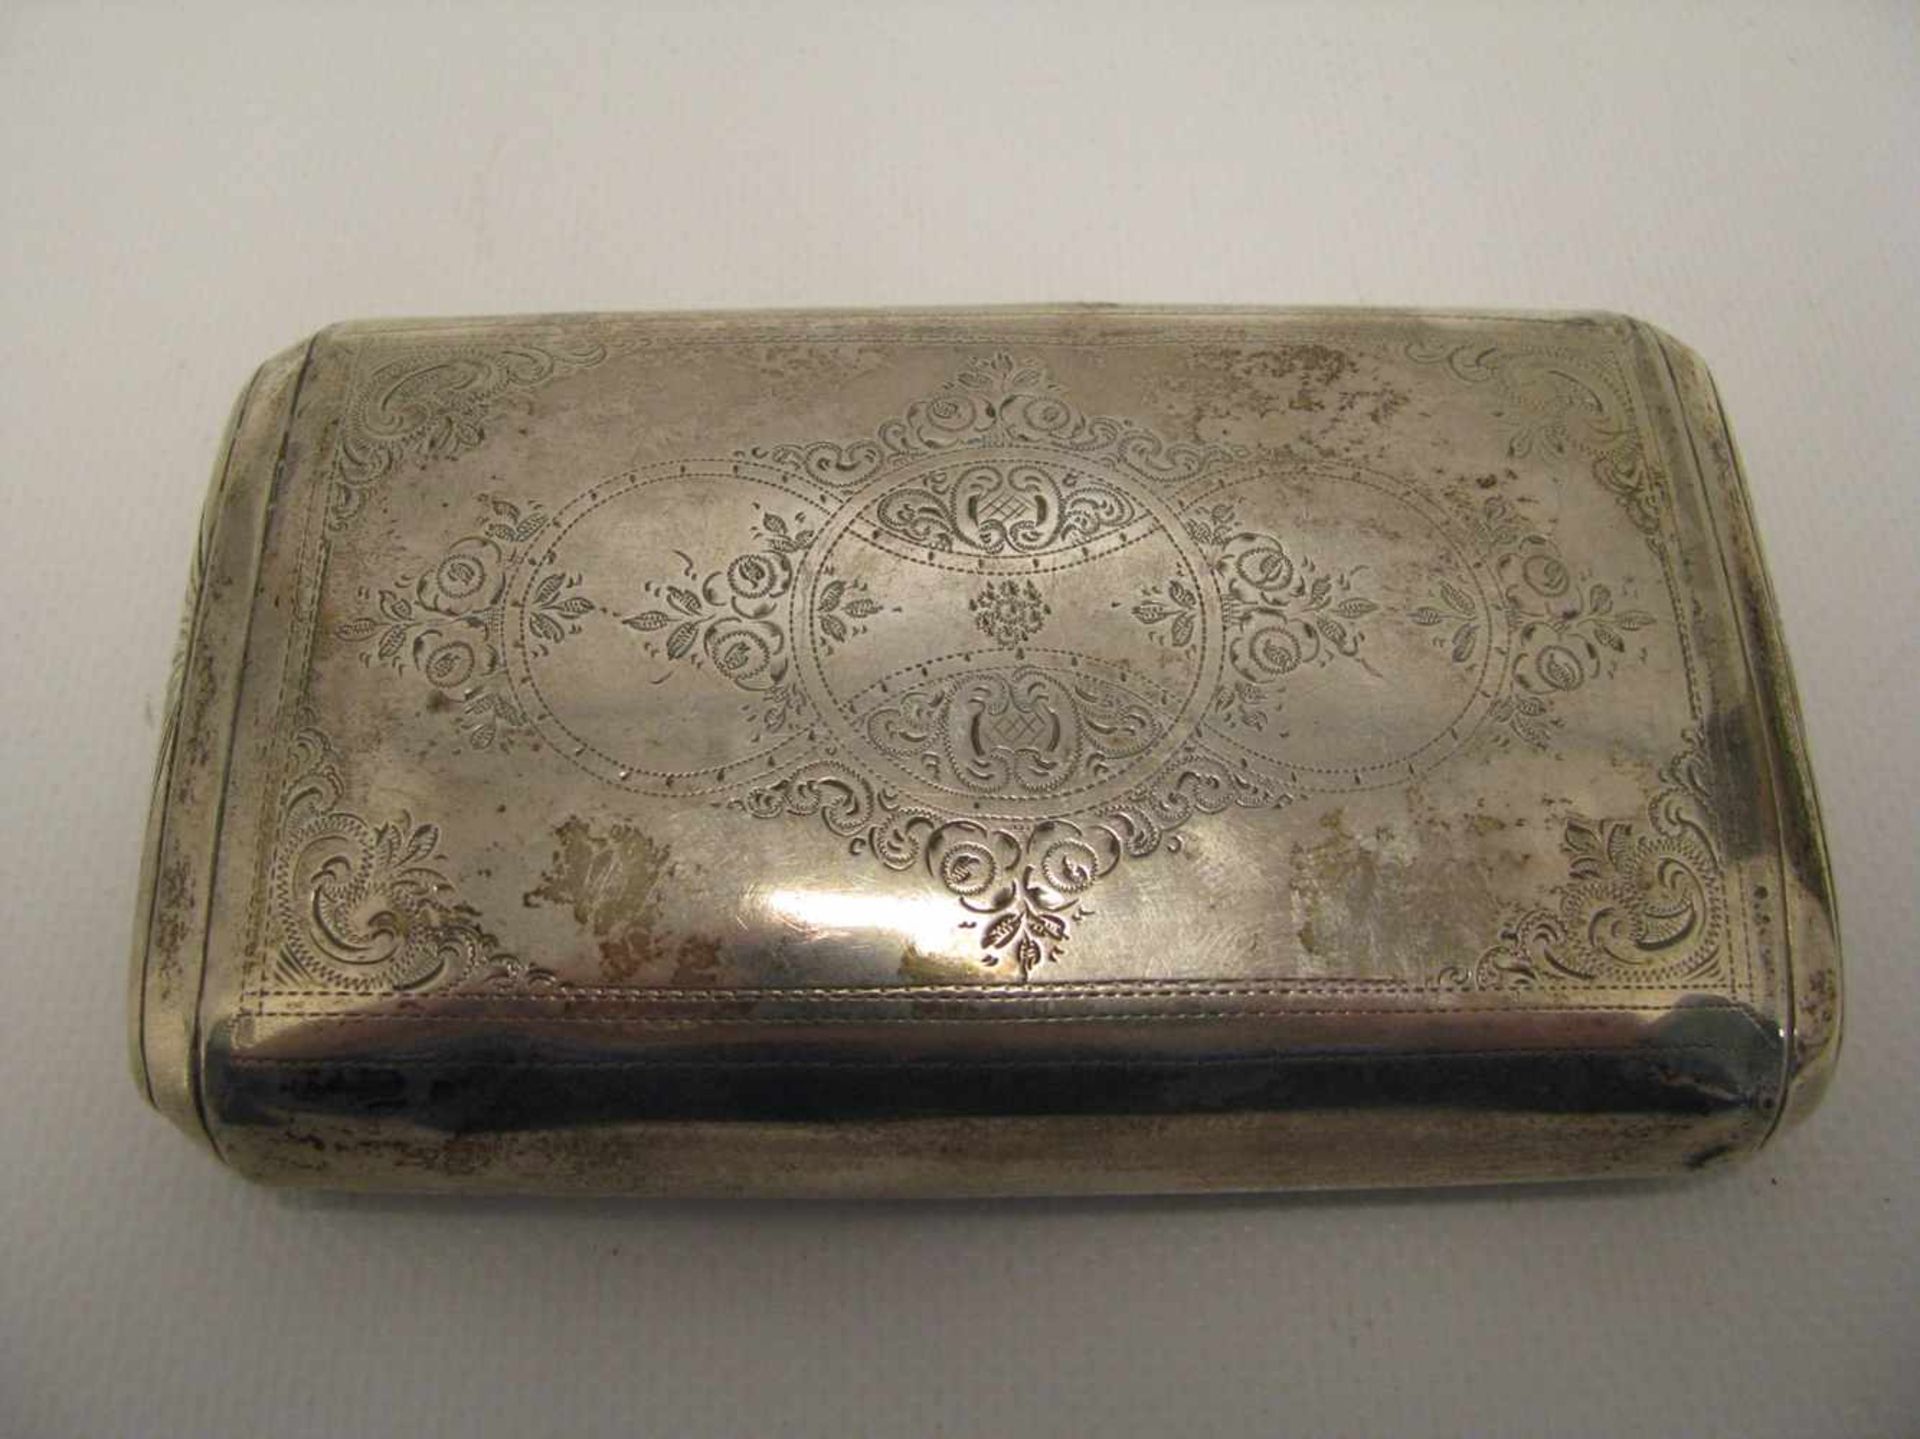 Tabakdose, um 1800, 835er Silber, gepunzt, 144 g, 2,2 x 13,5 x 8 cm. - Bild 2 aus 2